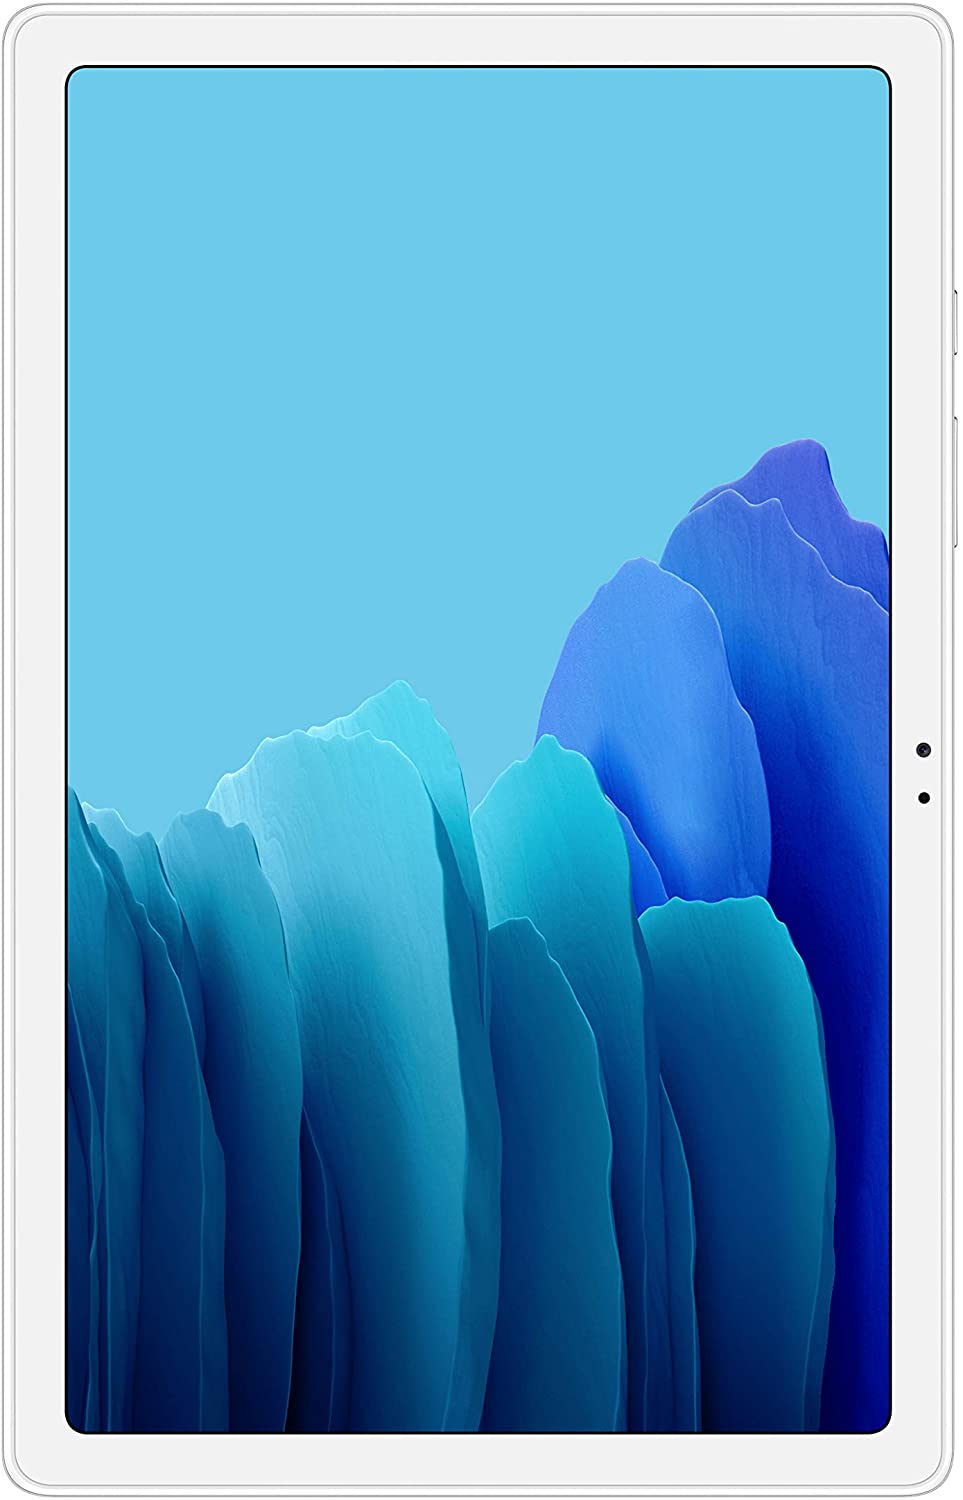 Samsung Galaxy Tab A7 10.4 Wi-Fi 32GB Silver ($179.99)